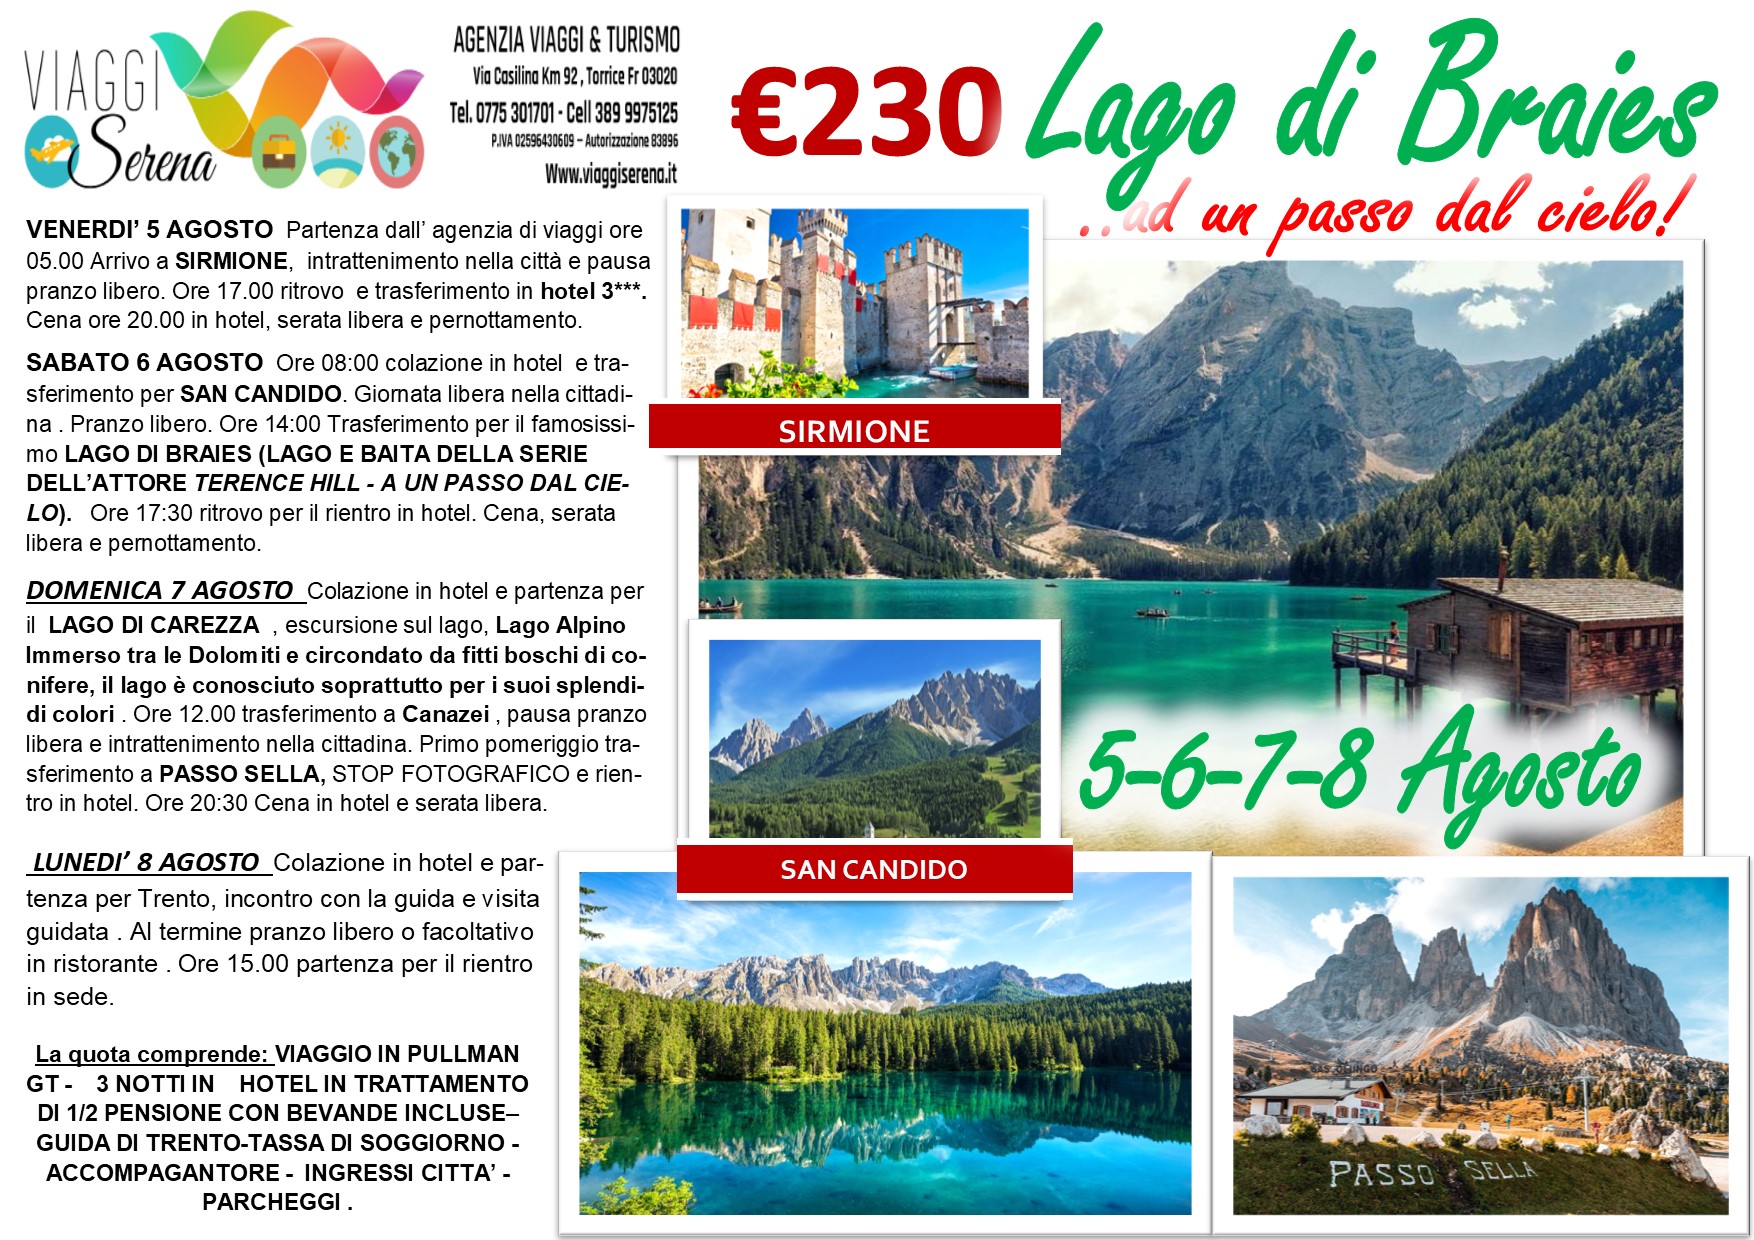 Viaggi di Gruppo: Lago di Braies, Sirmione, Lago di Carezza & Trento 5-6-7-8 Agosto €230,00